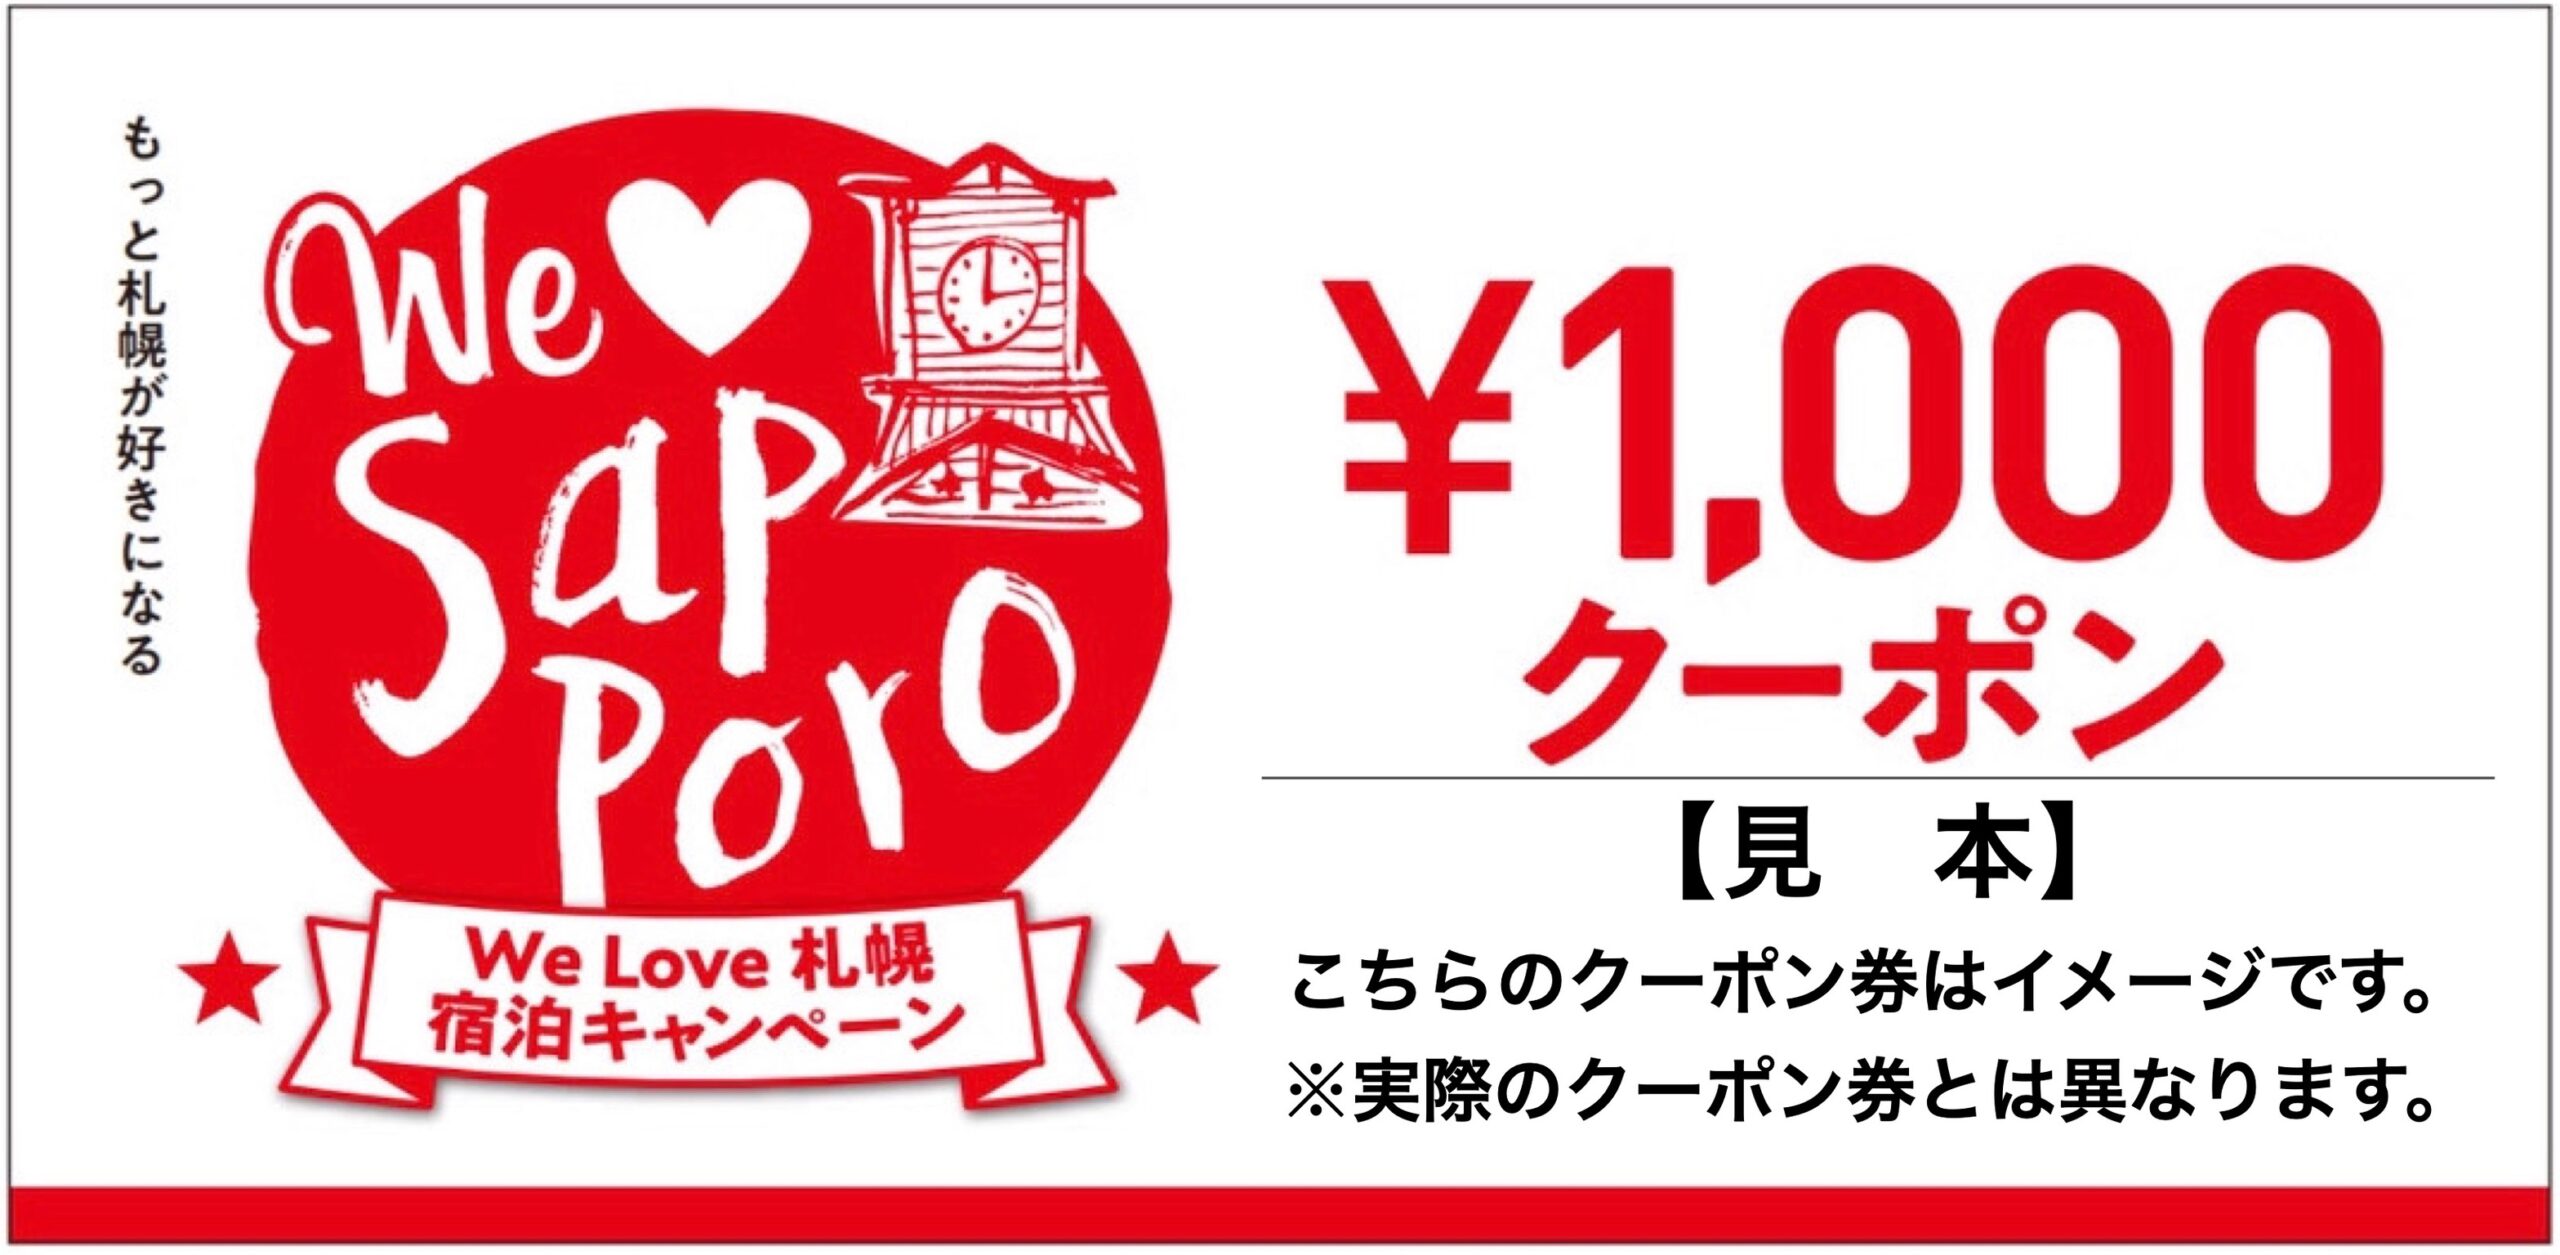 公式】 HOTEL 時計台 | We Love 札幌 宿泊キャンペーン| 割引き特典 